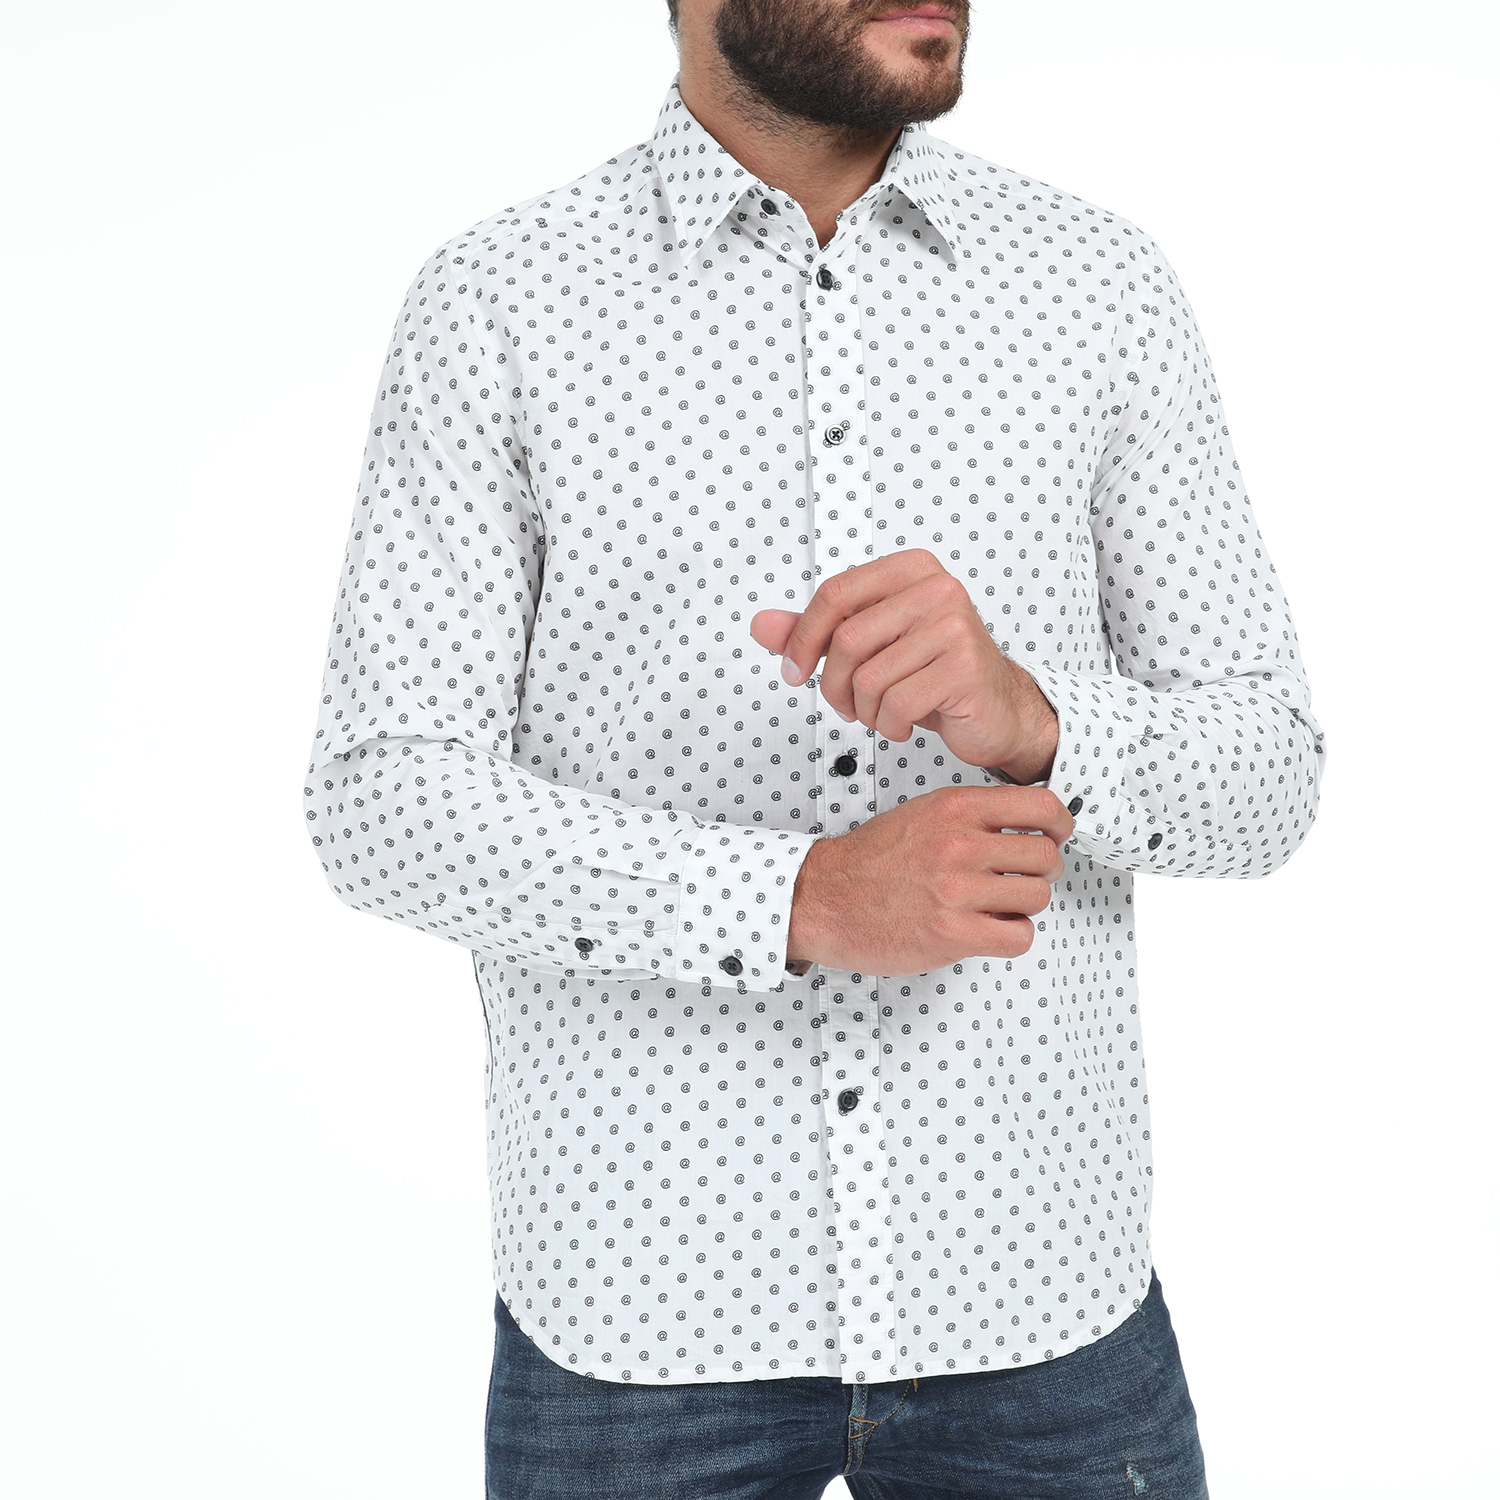 Ανδρικά/Ρούχα/Πουκάμισα/Μακρυμάνικα DIESEL - Ανδρικό πουκάμισο DIESEL S-JIROU λευκό μπλε